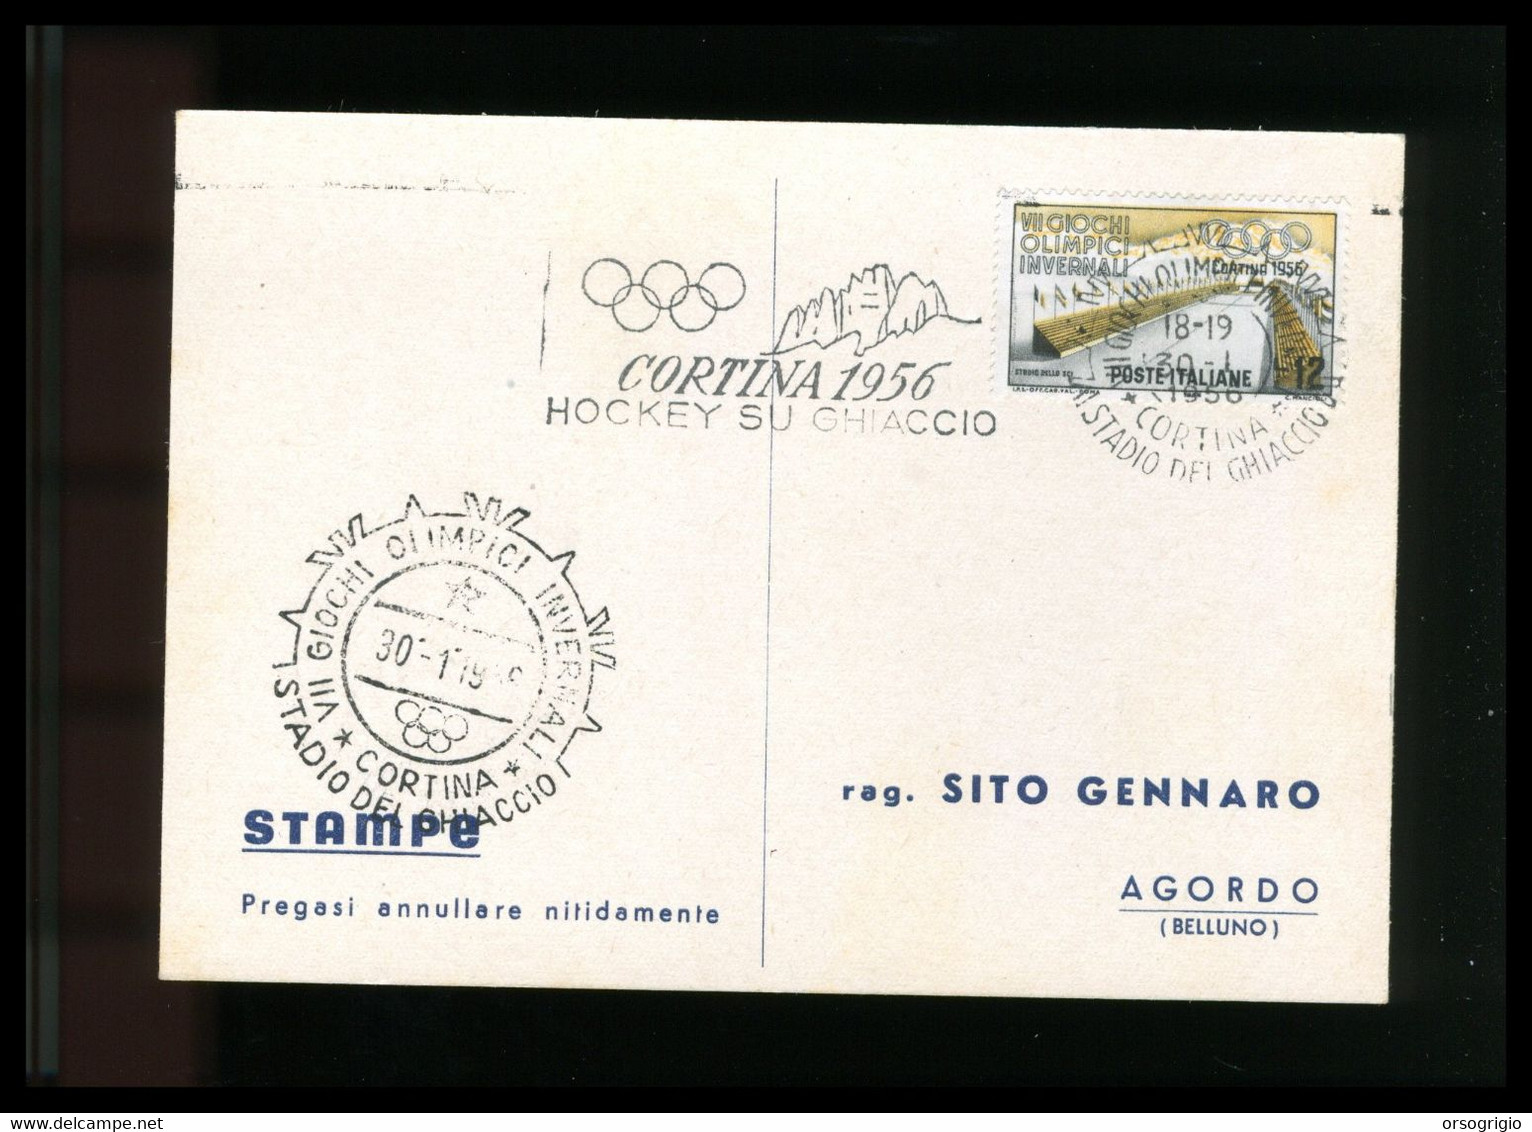 ITALIA - 1956 GIOCHI OLIMPICI INVERNALI Di CORTINA D'AMPEZZO - HOCKEY SU GHIACCIO -  30-1-1956    LUSSO - Winter 1956: Cortina D'Ampezzo